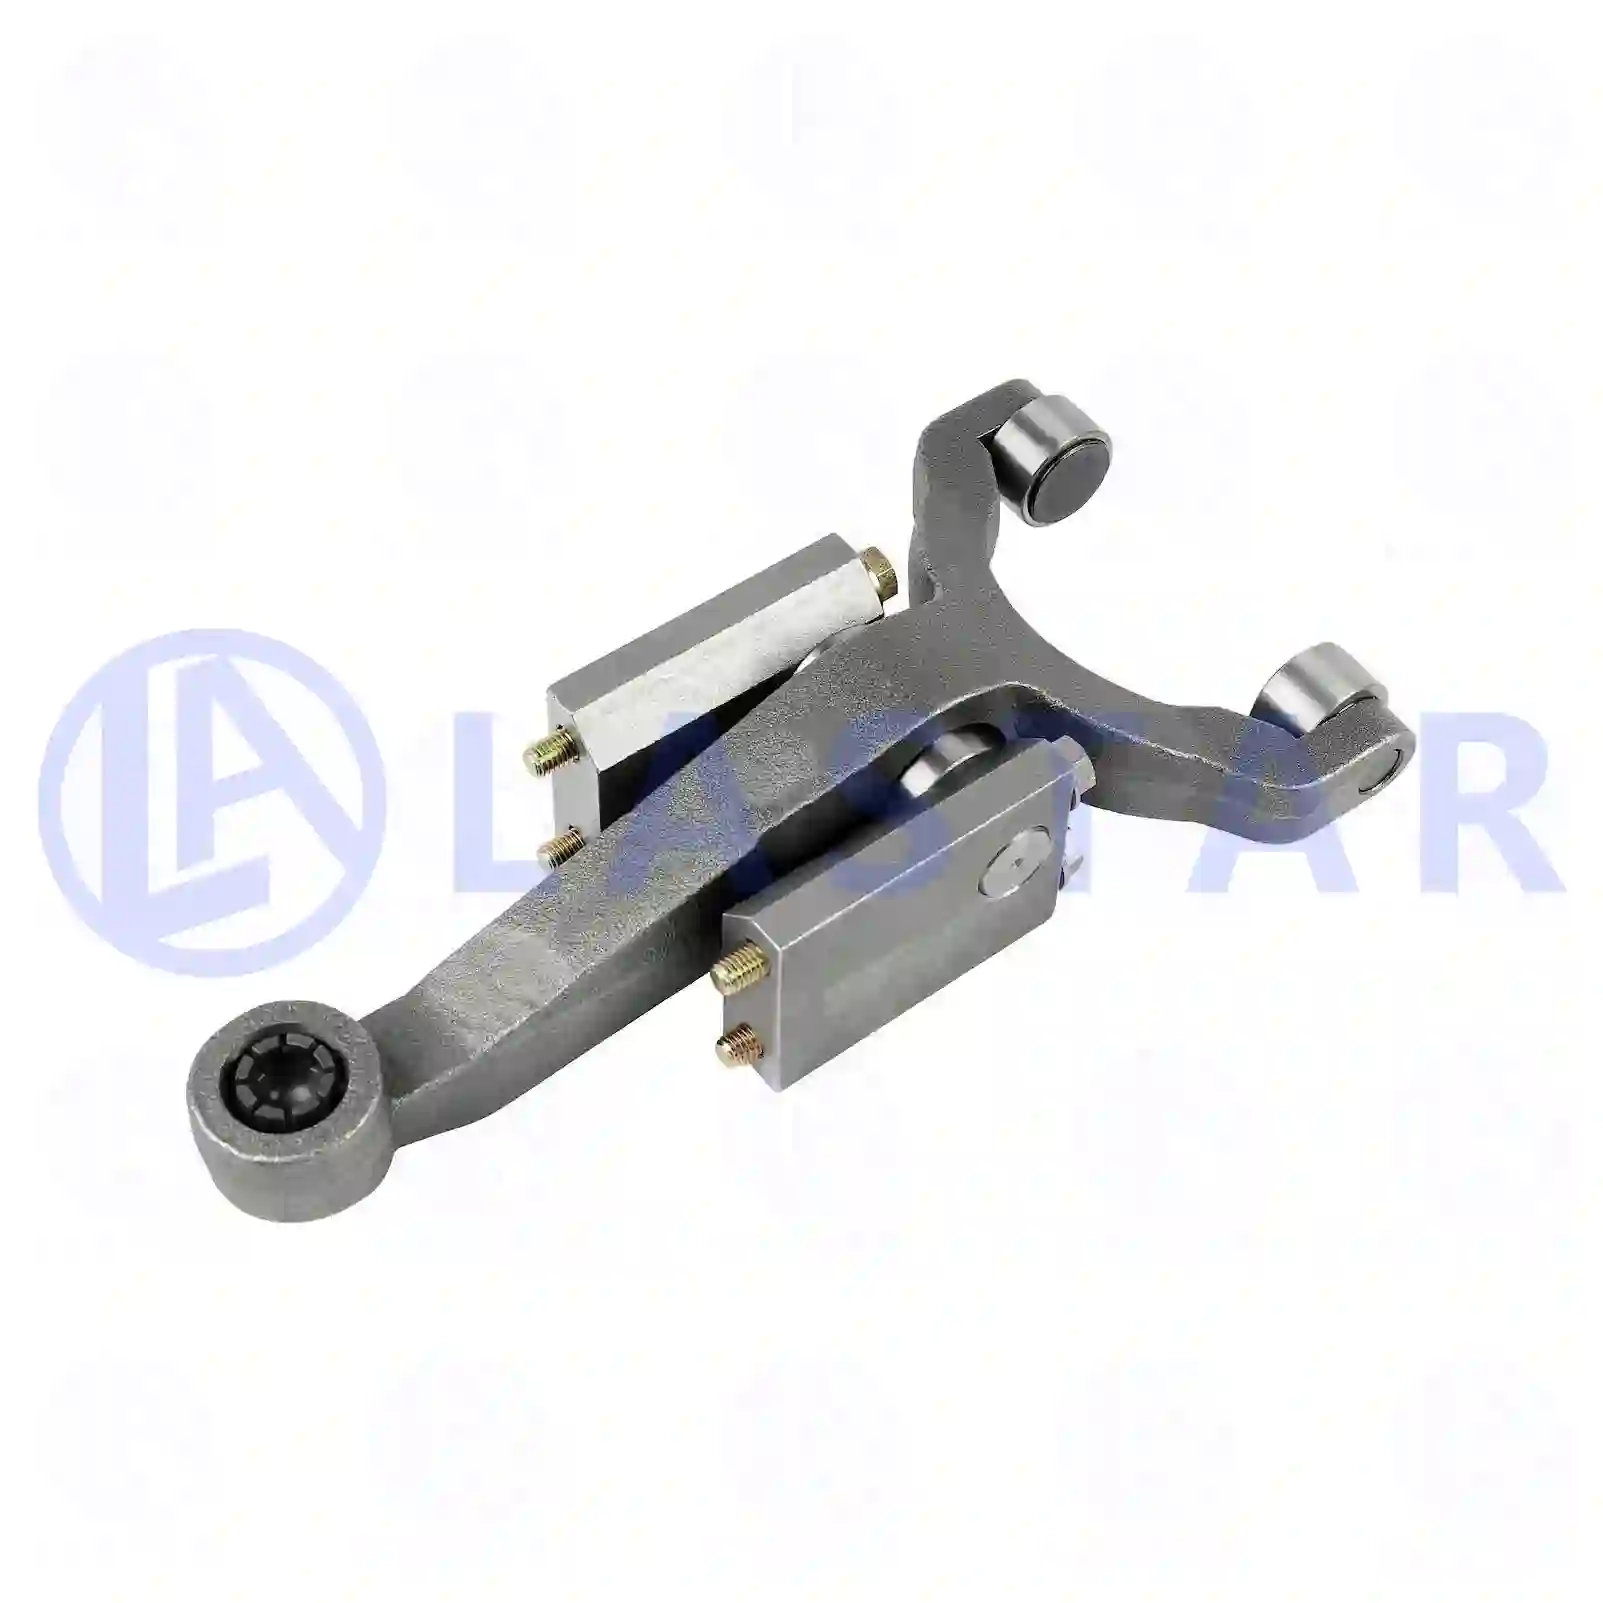 Release Lever Release lever, la no: 77722691 ,  oem no:1438641, ZG30367-0008 Lastar Spare Part | Truck Spare Parts, Auotomotive Spare Parts